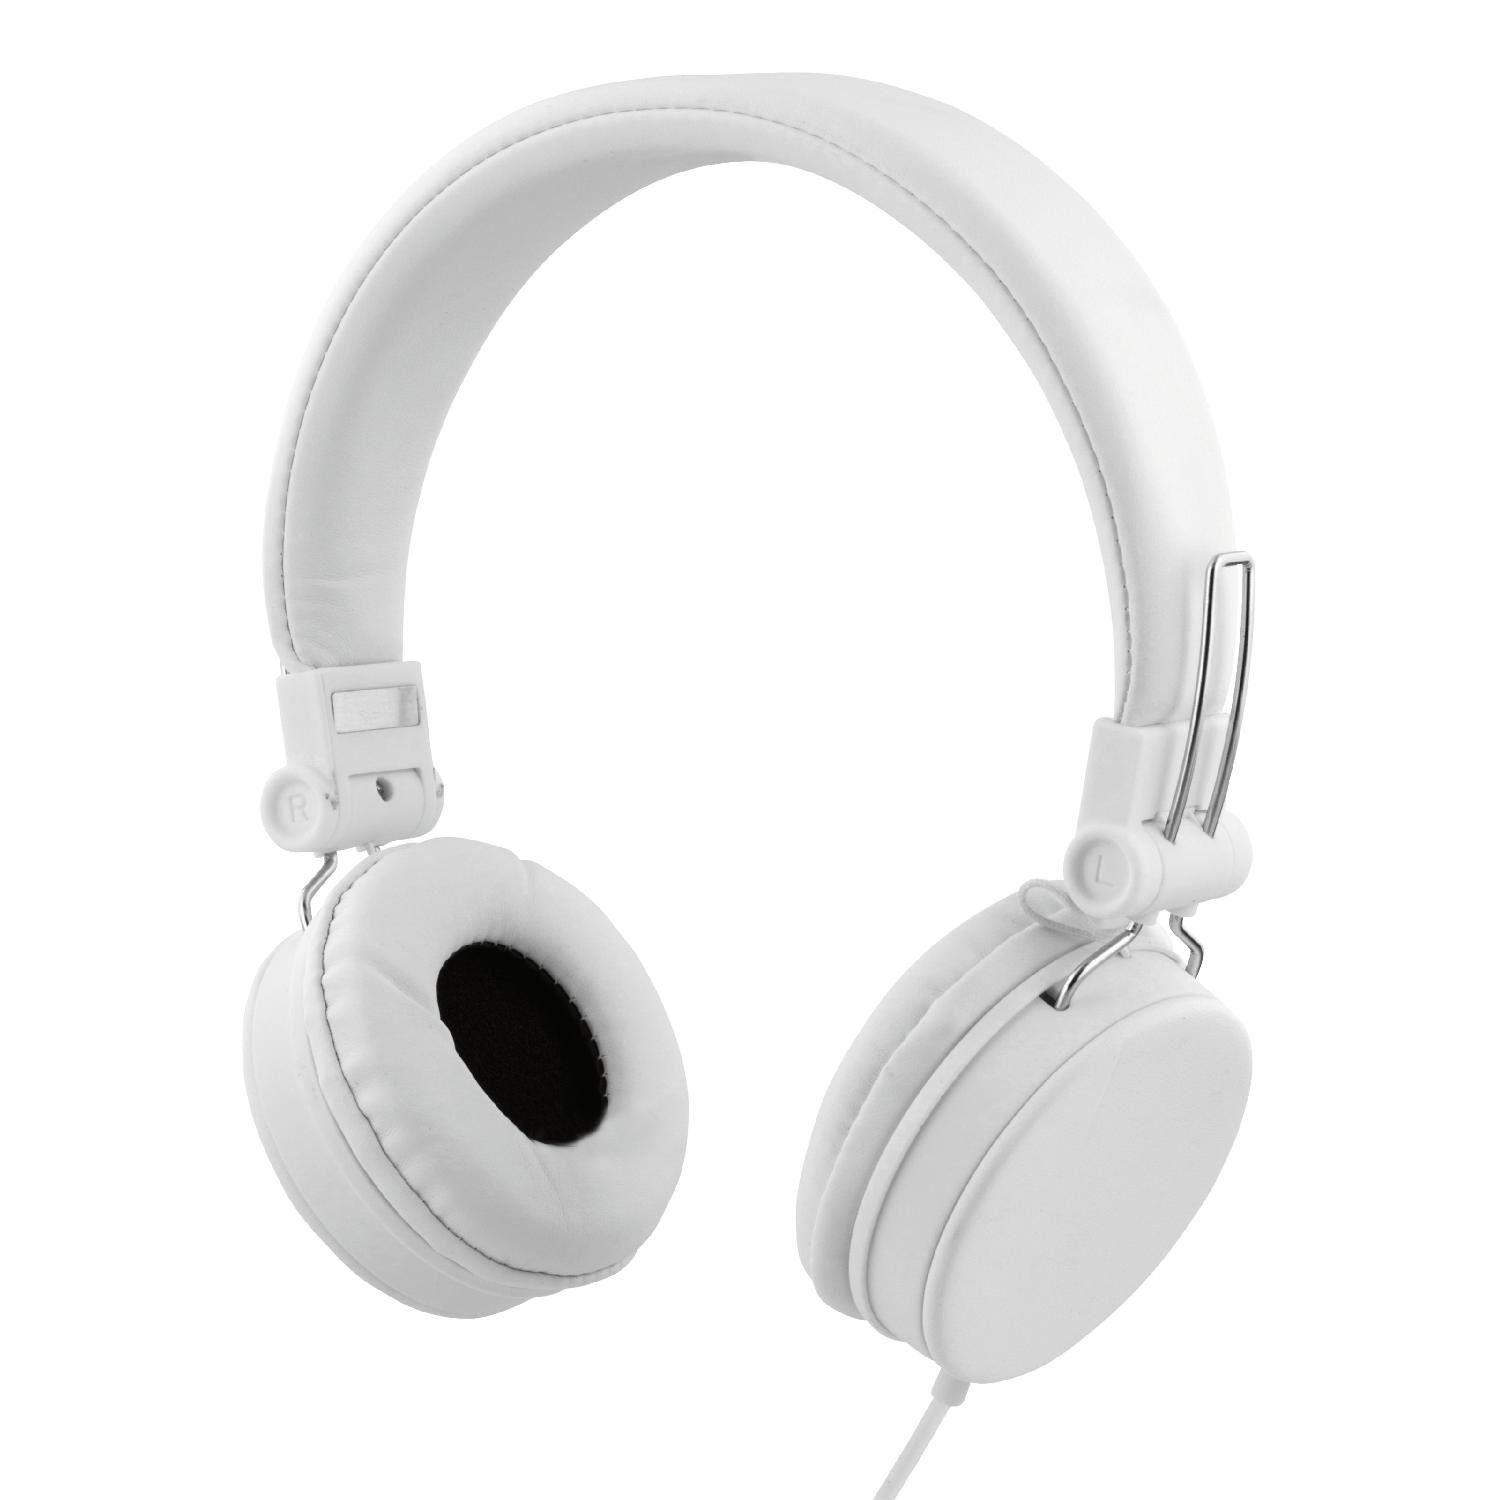 Spielzeugladen STREETZ Kopfhörer 5 Klinkenanschluss 1,2m faltbares 3.5mm Ohrpolster Mikrofon, Kabel (integriertes Jahre Herstellergarantie) weiß On-Ear-Kopfhörer Headset, inkl